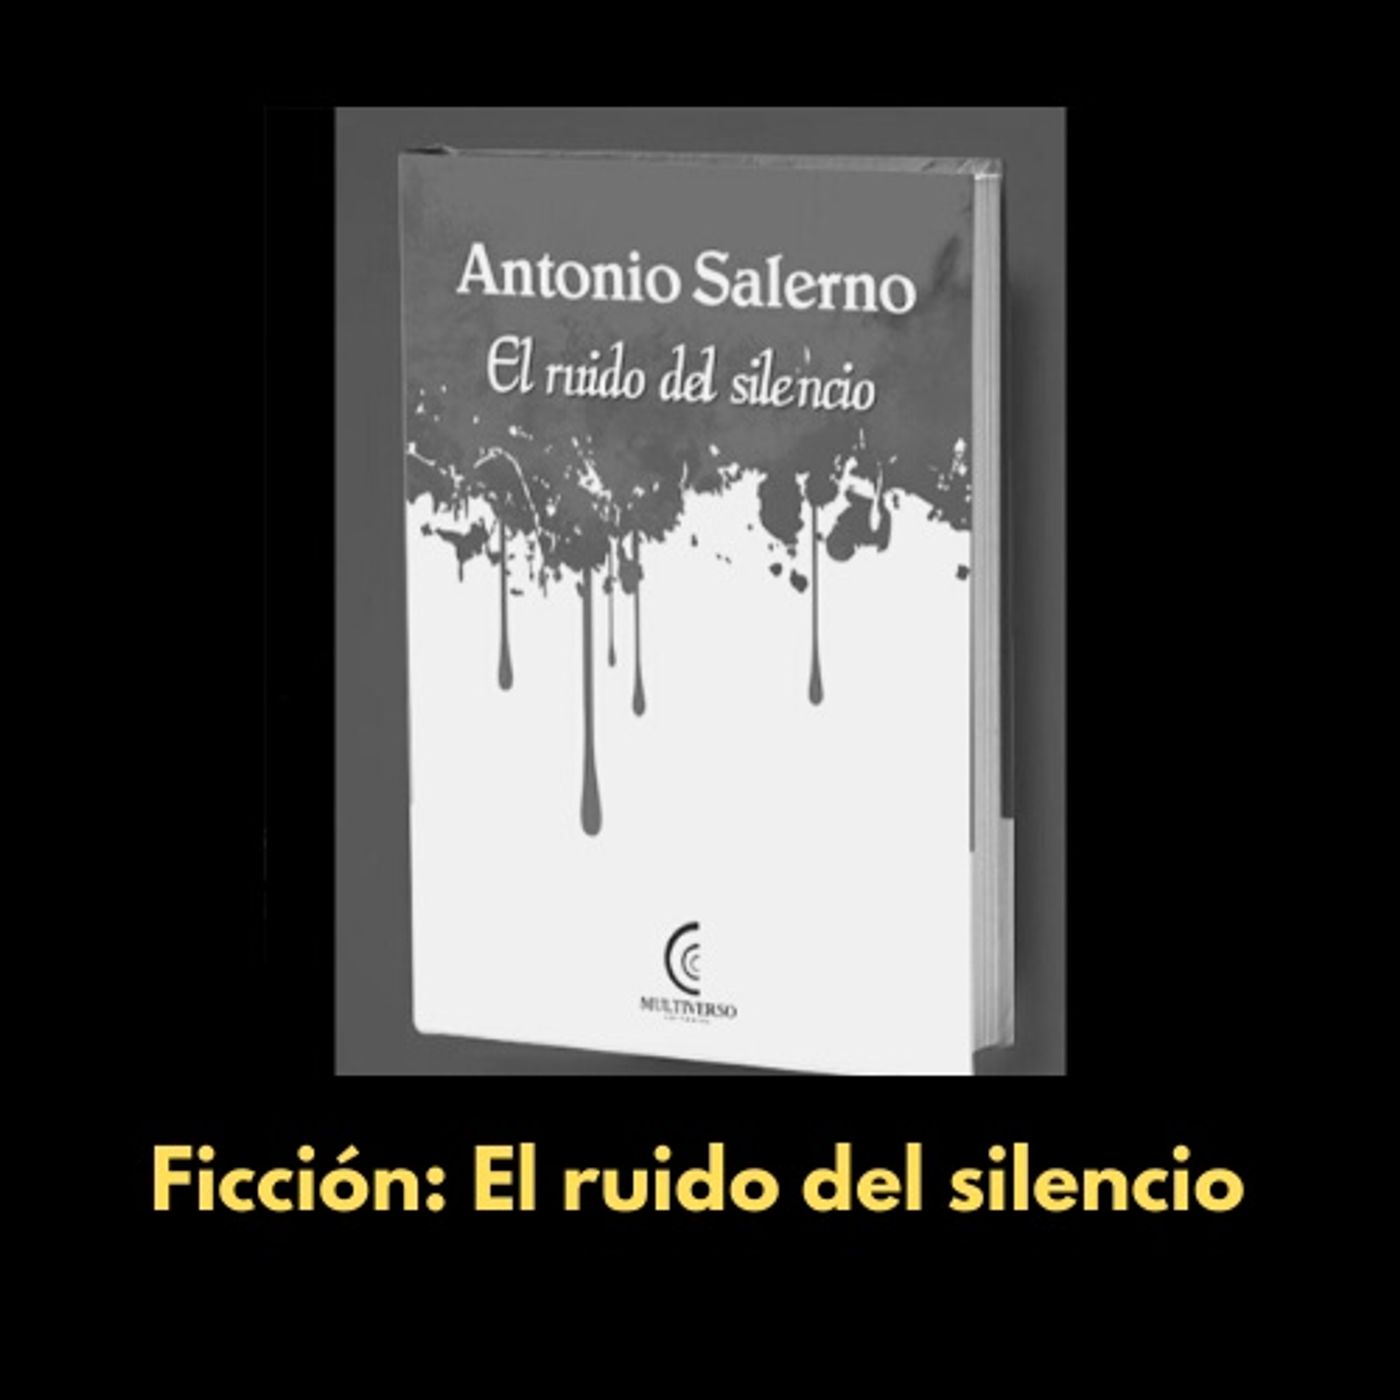 El libro de la semana: "El ruido del silencio" de Antonio Salerno (Multiverso, 2020)